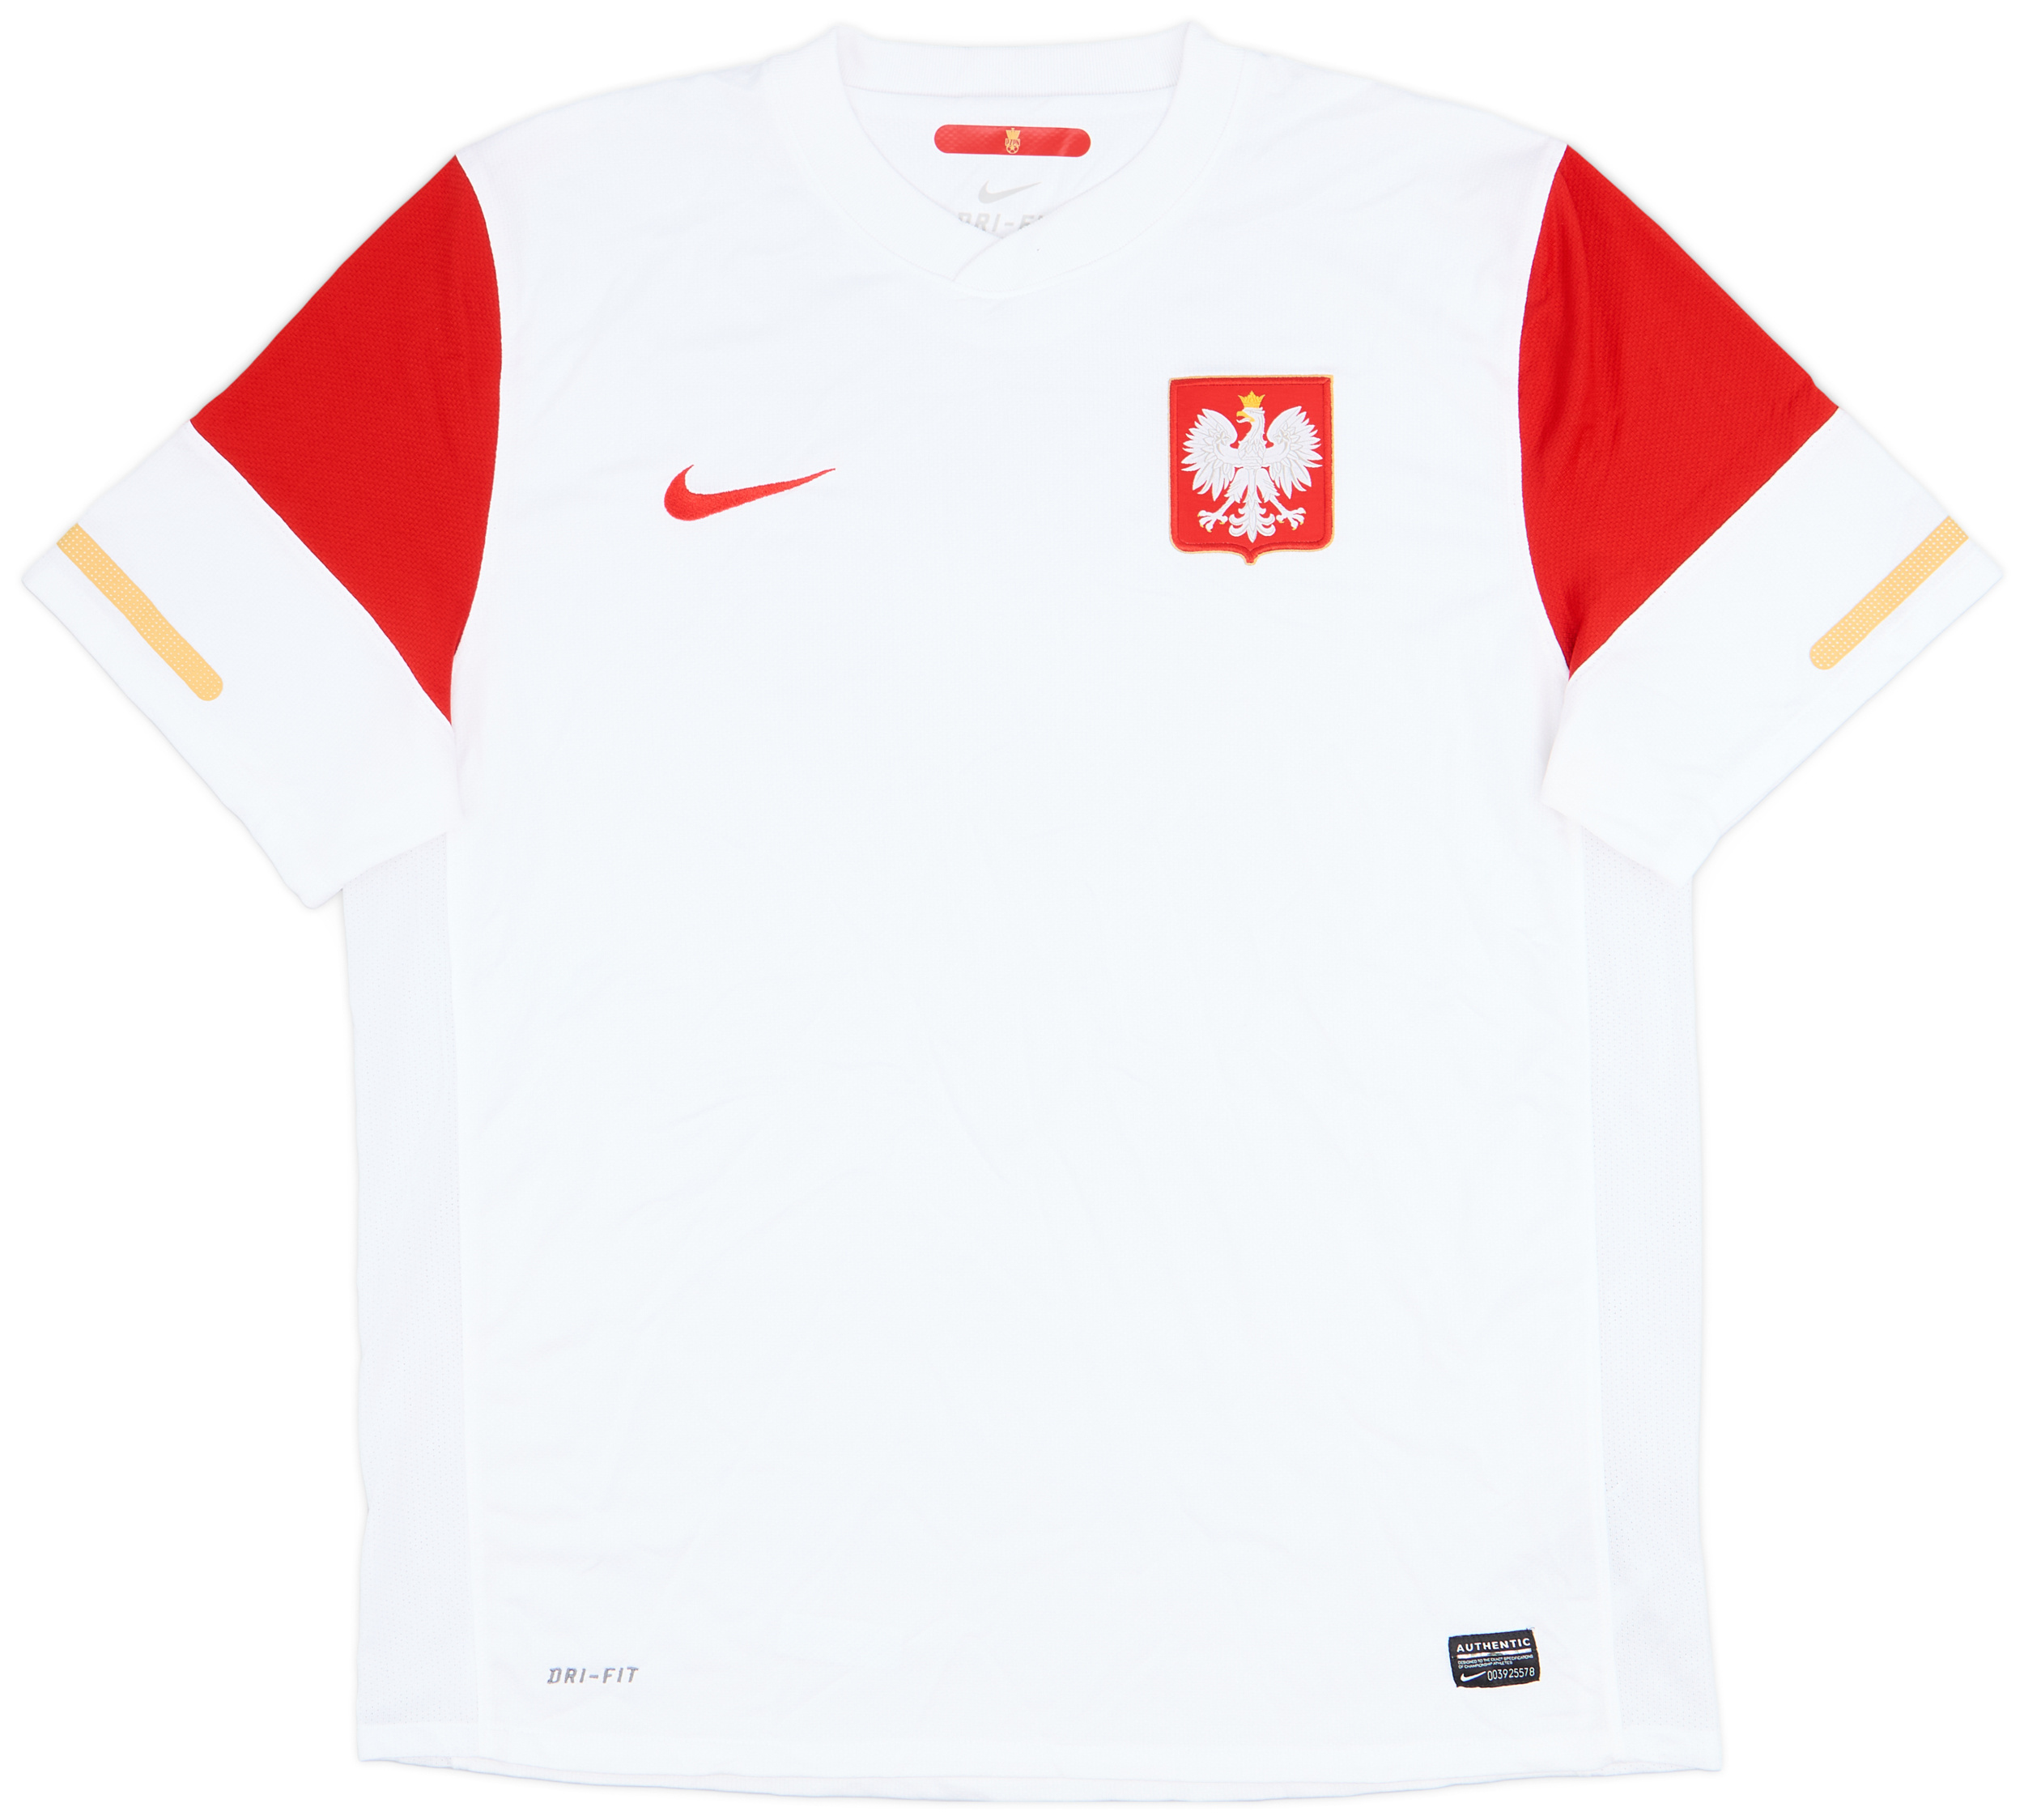 2010-12 Poland Home Shirt - 10/10 - ()